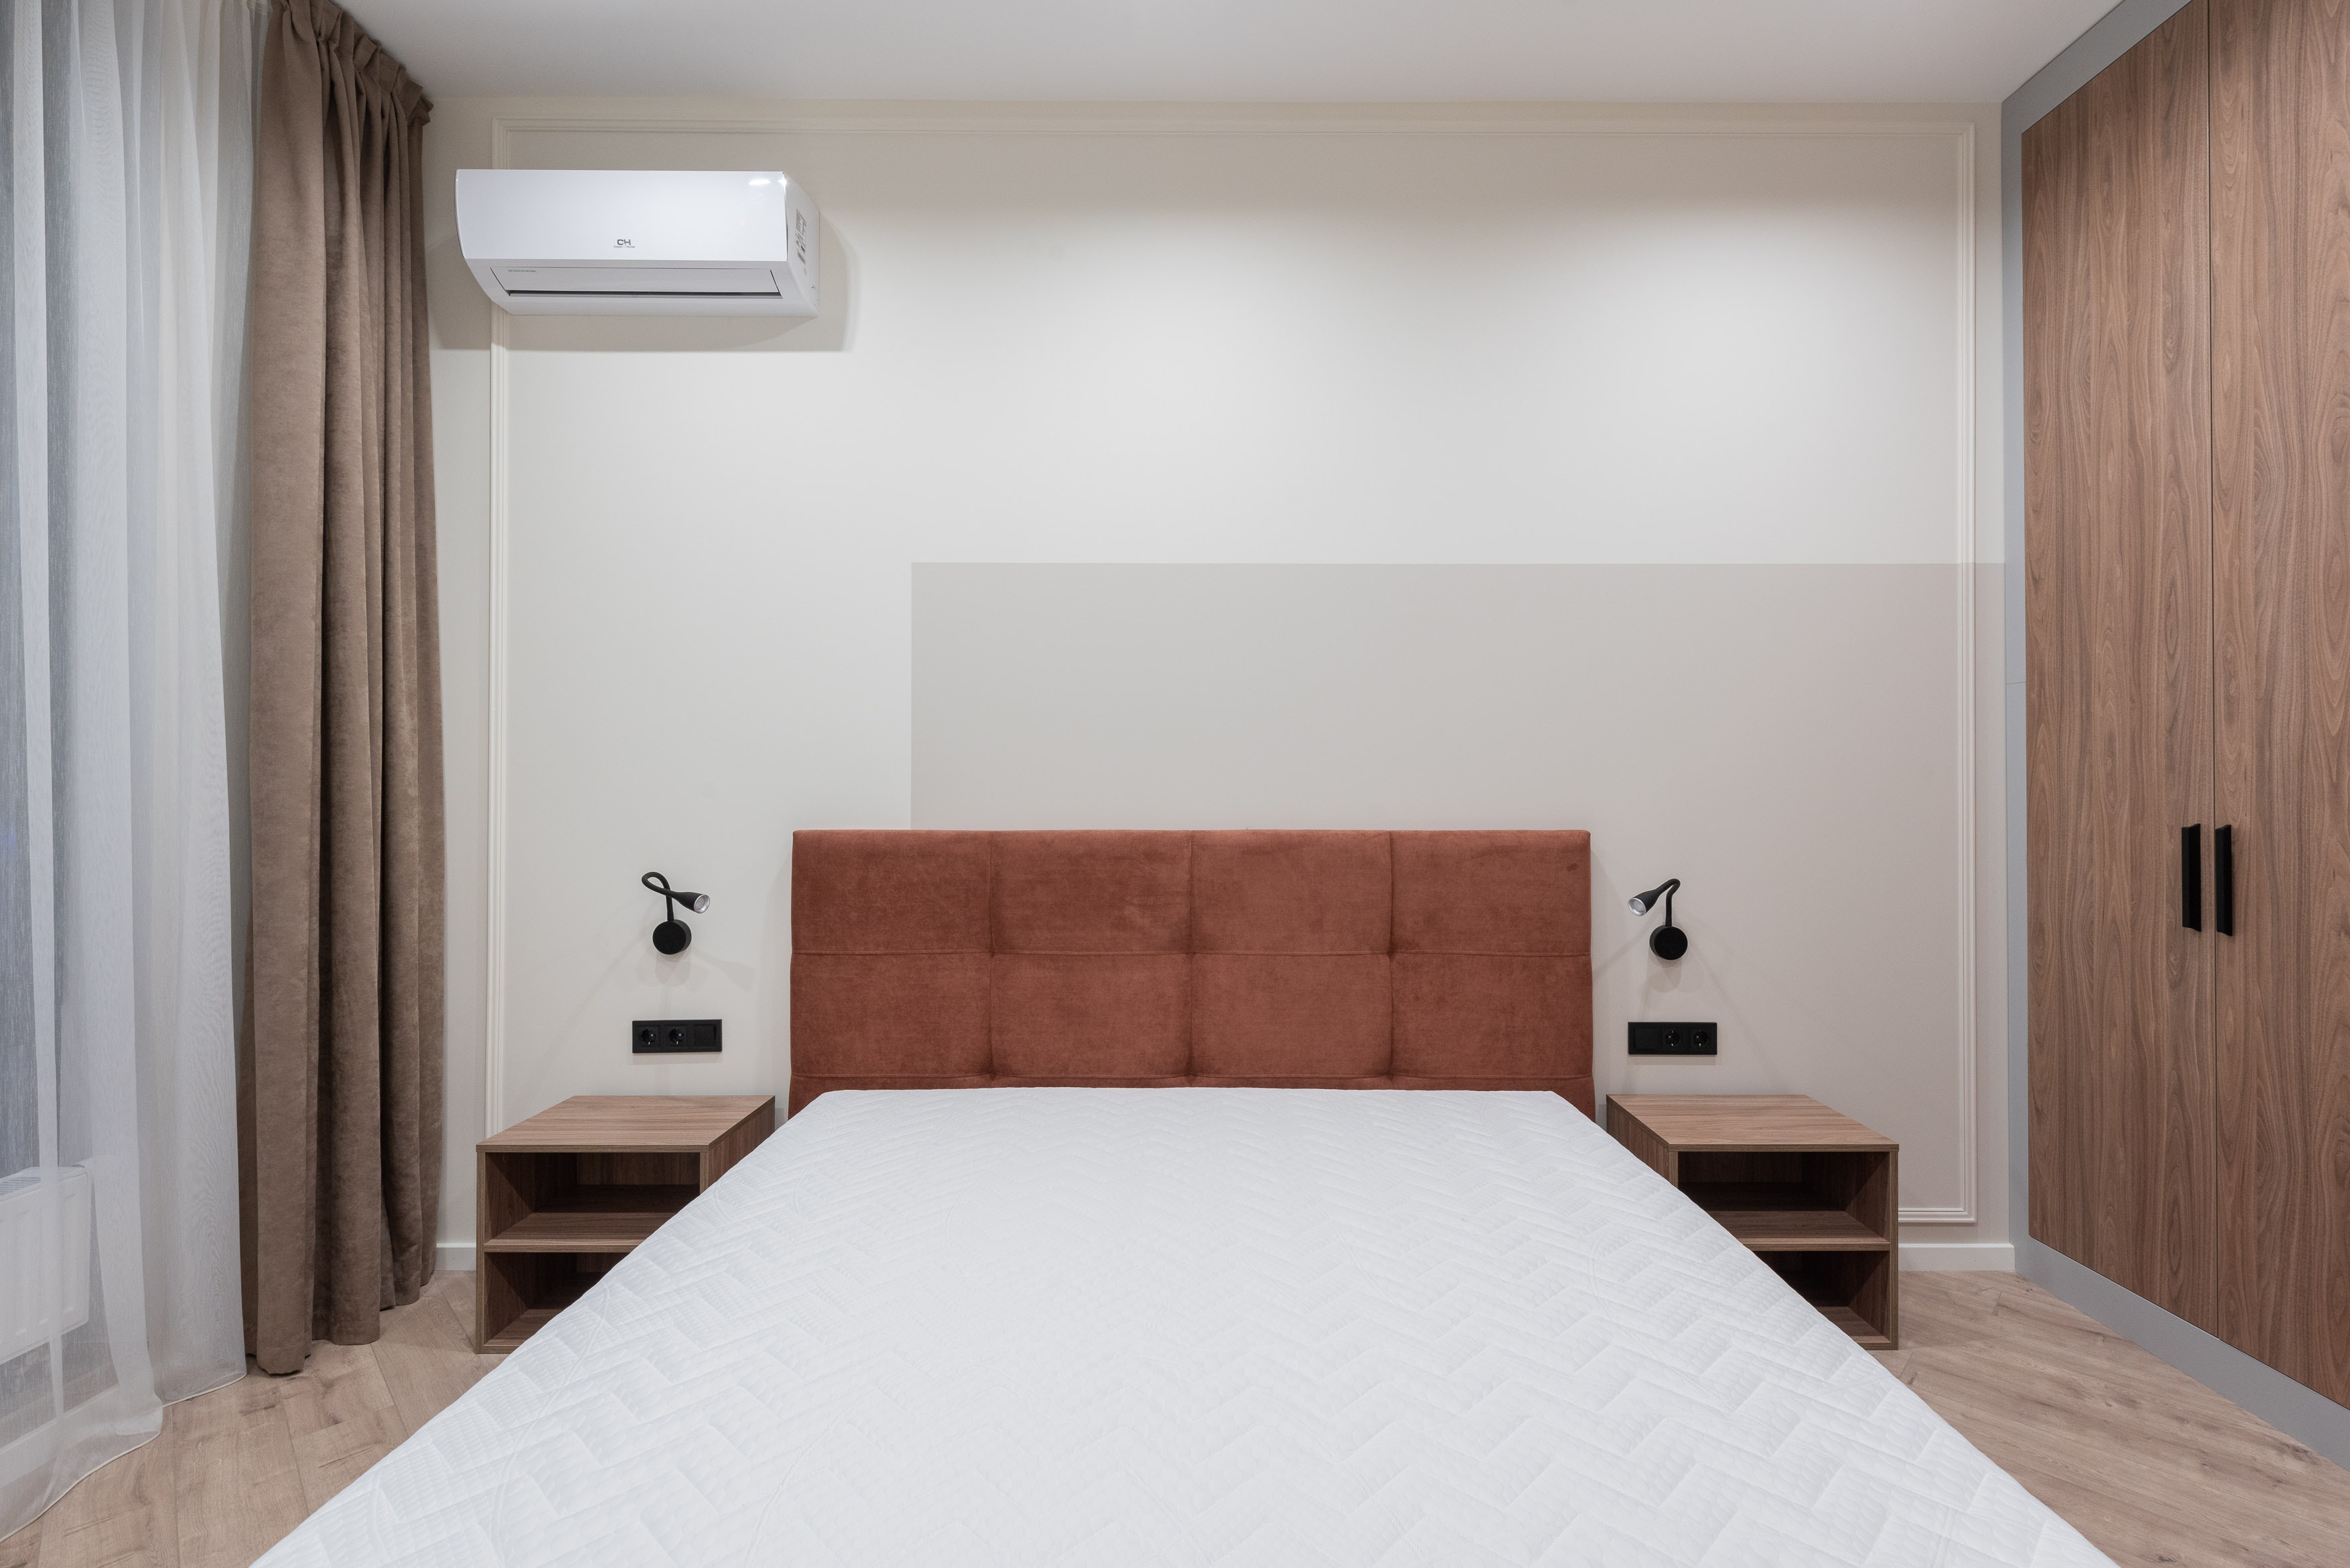 miestnosť s klimatizáciou a postelou